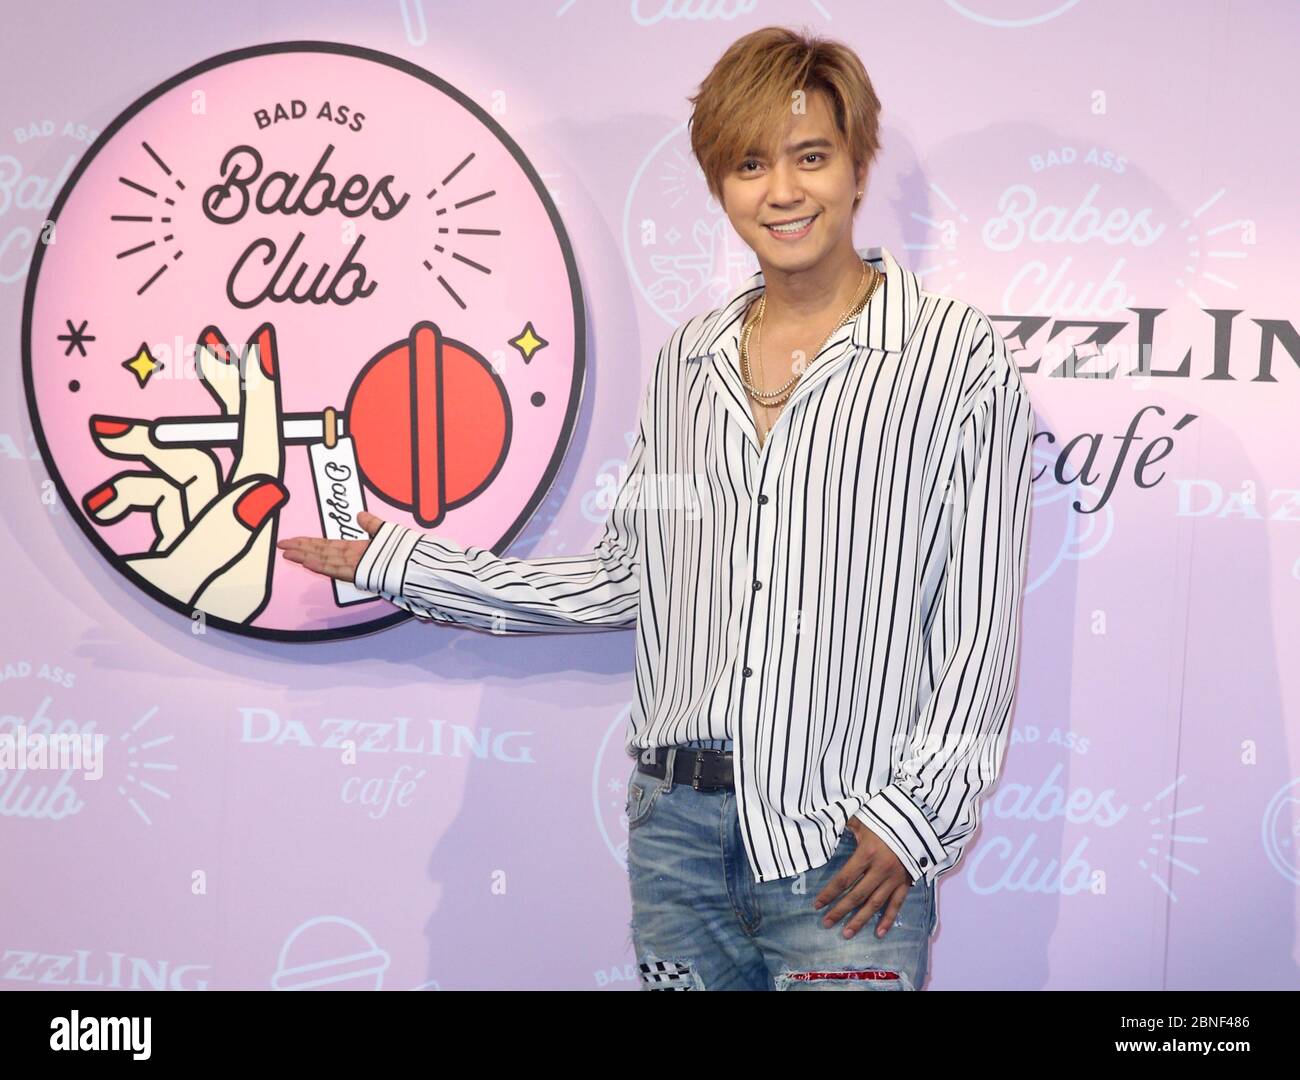 **TAIWAN OUT**--File--Taiwanais chanteur, acteur et animateur Show Lo participe à l'ouverture du magasin concept 'Dazzling Cafe Badass Babes Club' à Taiwan, en Chine Banque D'Images